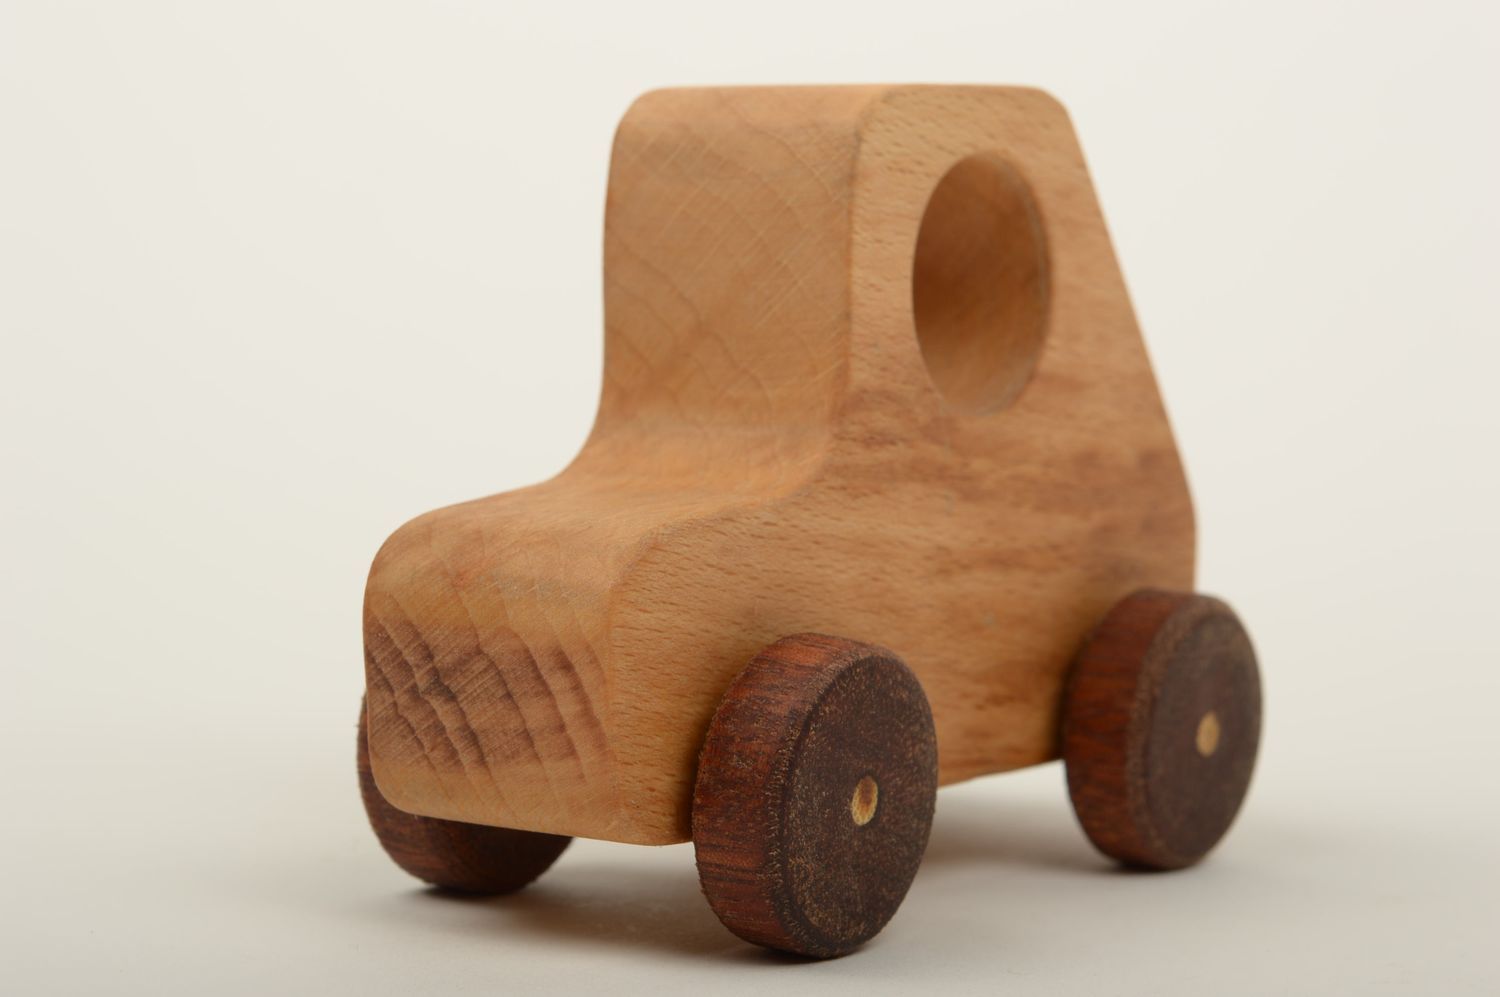 Spielzeug aus Holz handgefertigt Auto aus Holz Holzspielzeug Öko in Braun foto 2